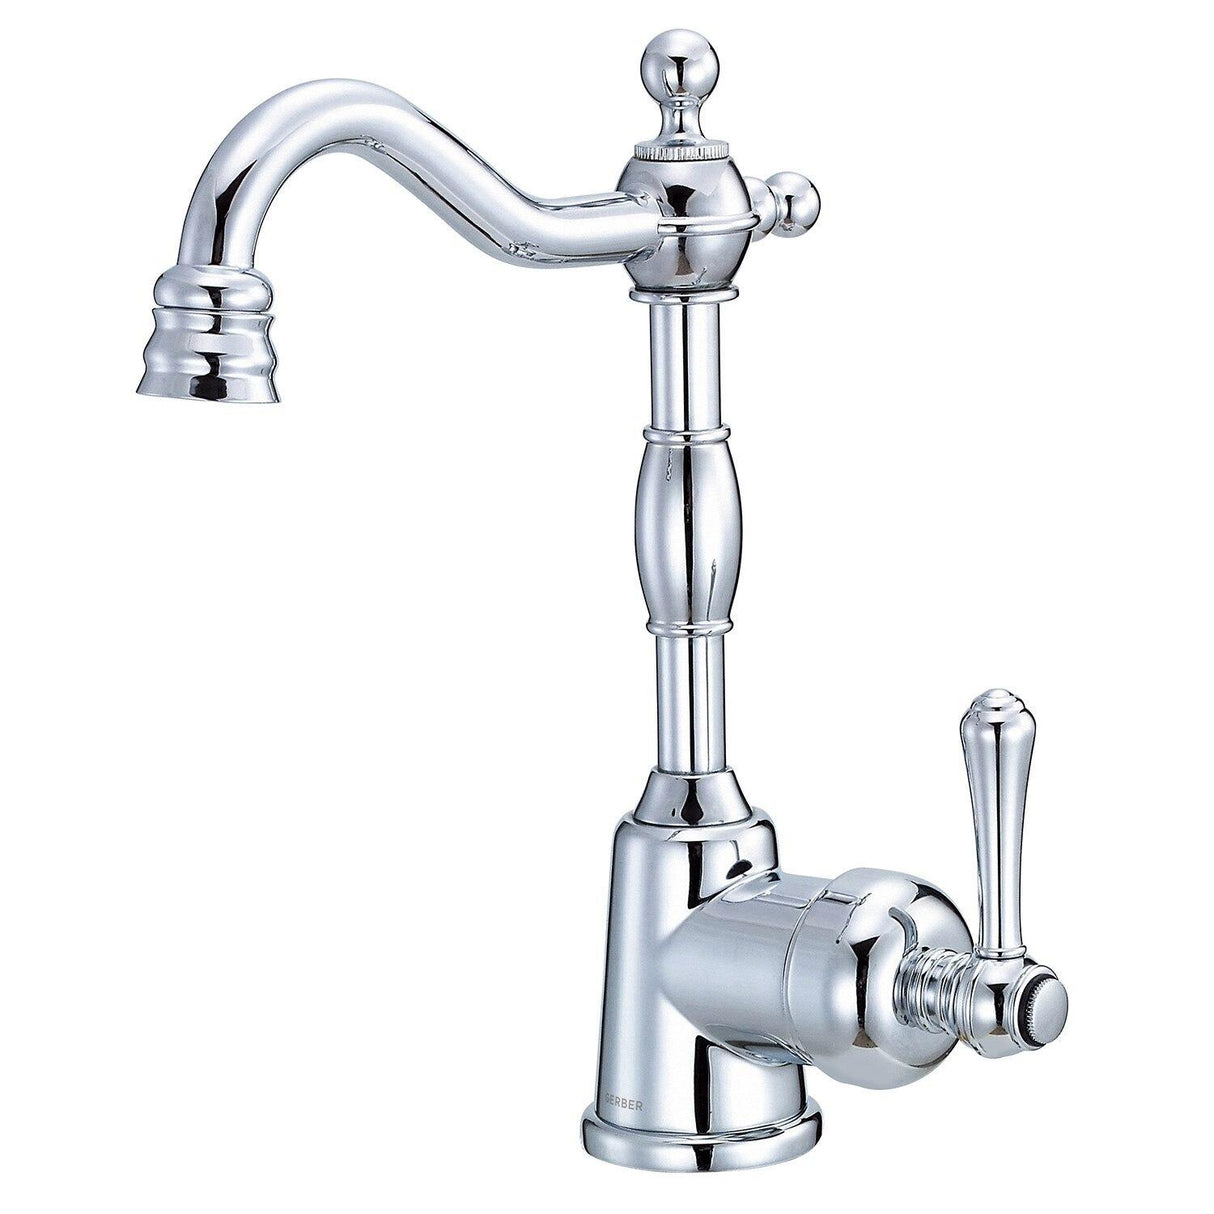 Gerber D150557SS Stainless Steel Opulence Single Handle Bar Faucet